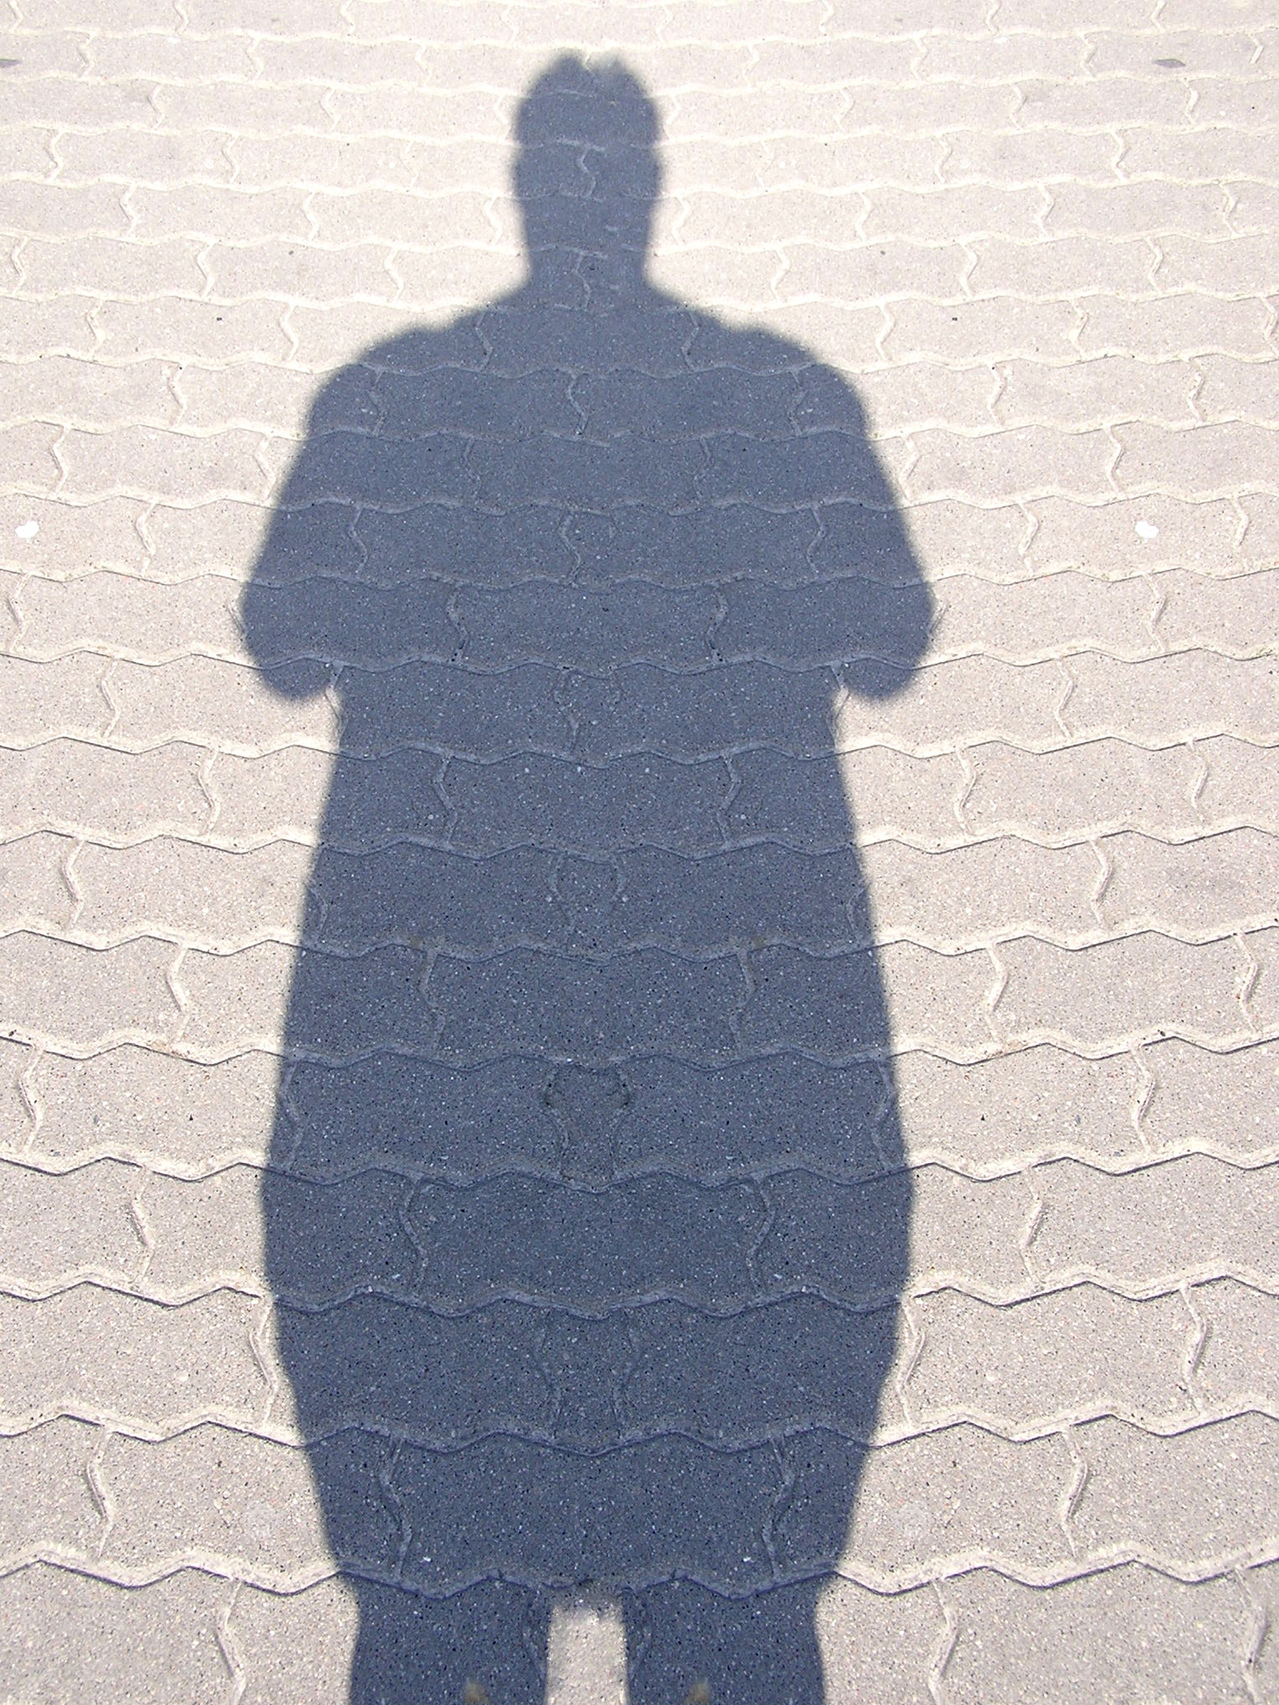 Fat shadow man 1168363 1279x1705